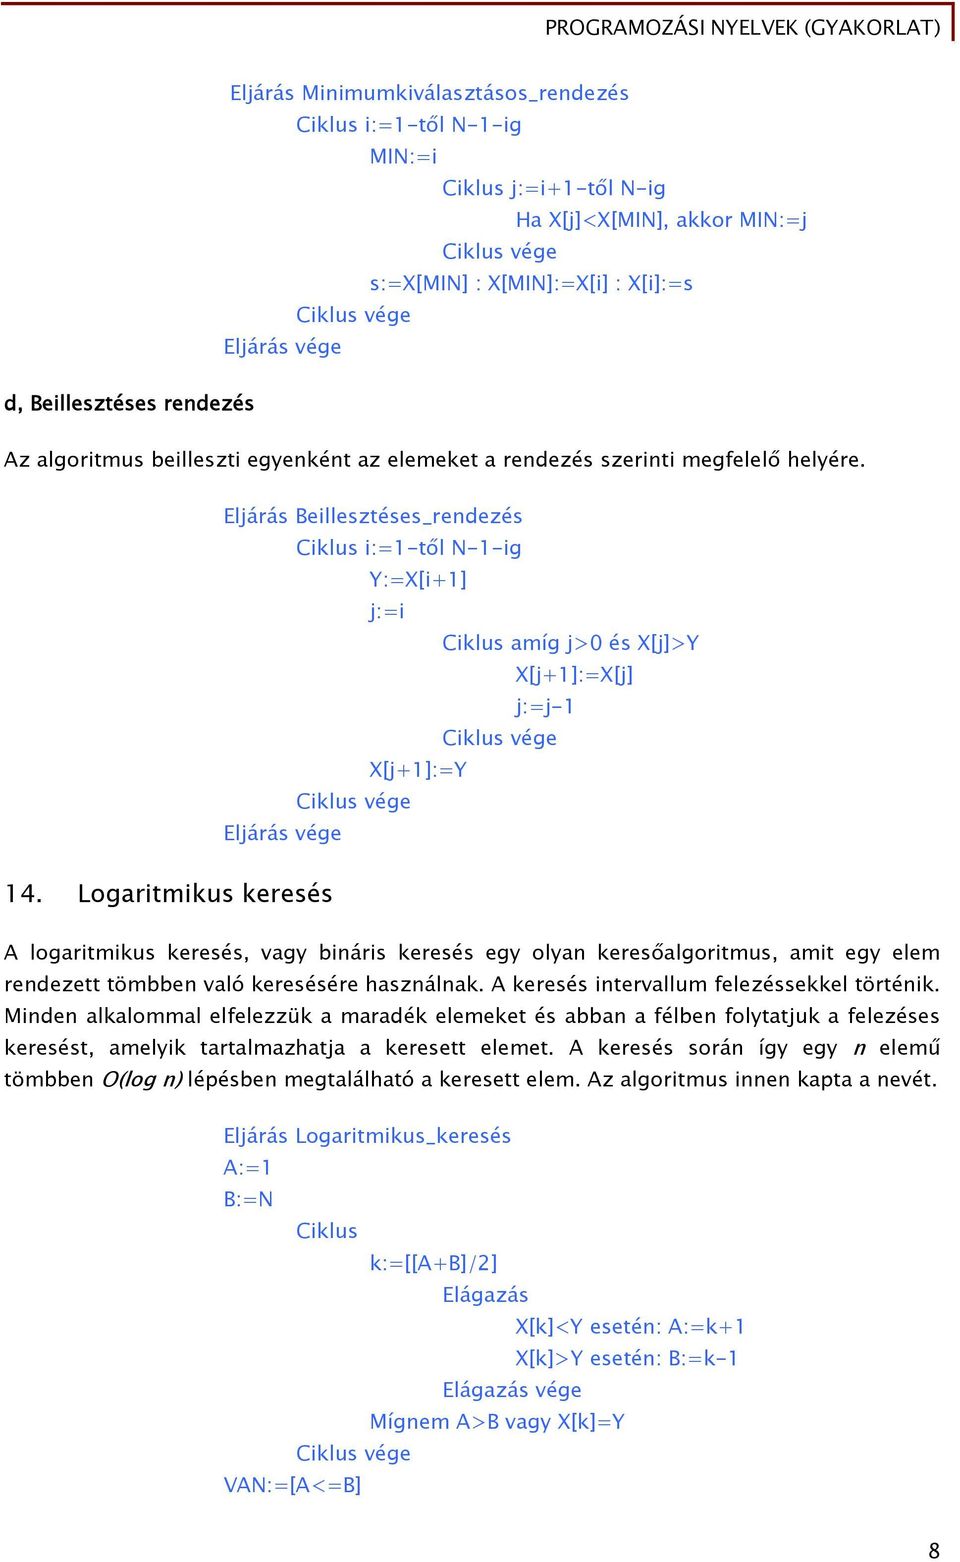 Logaritmikus keresés A logaritmikus keresés, vagy bináris keresés egy olyan keresőalgoritmus, amit egy elem rendezett tömbben való keresésére használnak. A keresés intervallum felezéssekkel történik.